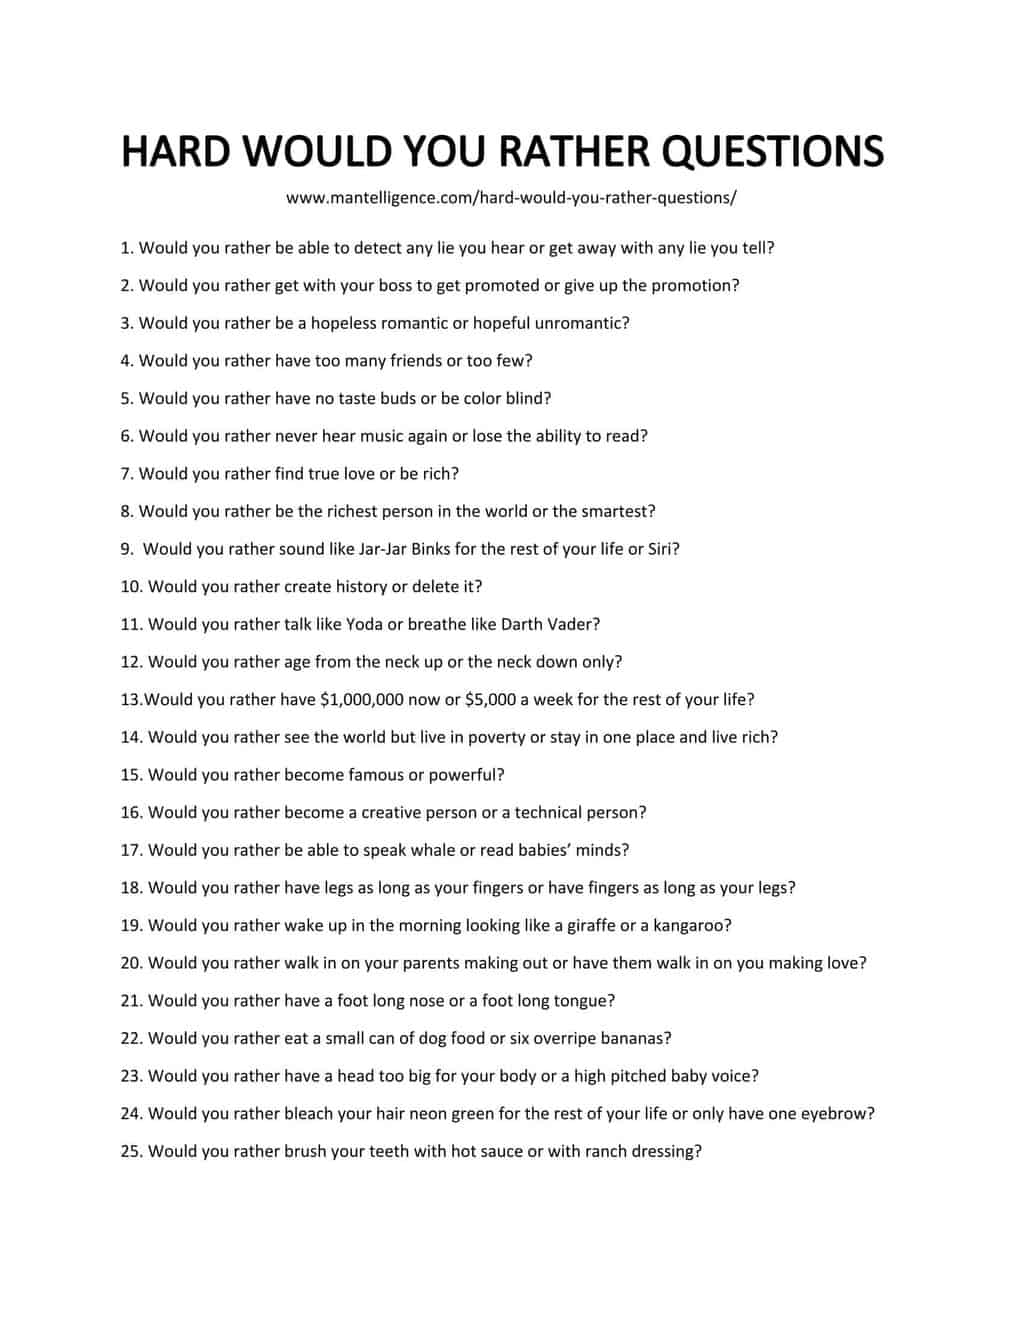 Más de 41 preguntas profundas y difíciles ¿Qué preferirías? [2023]